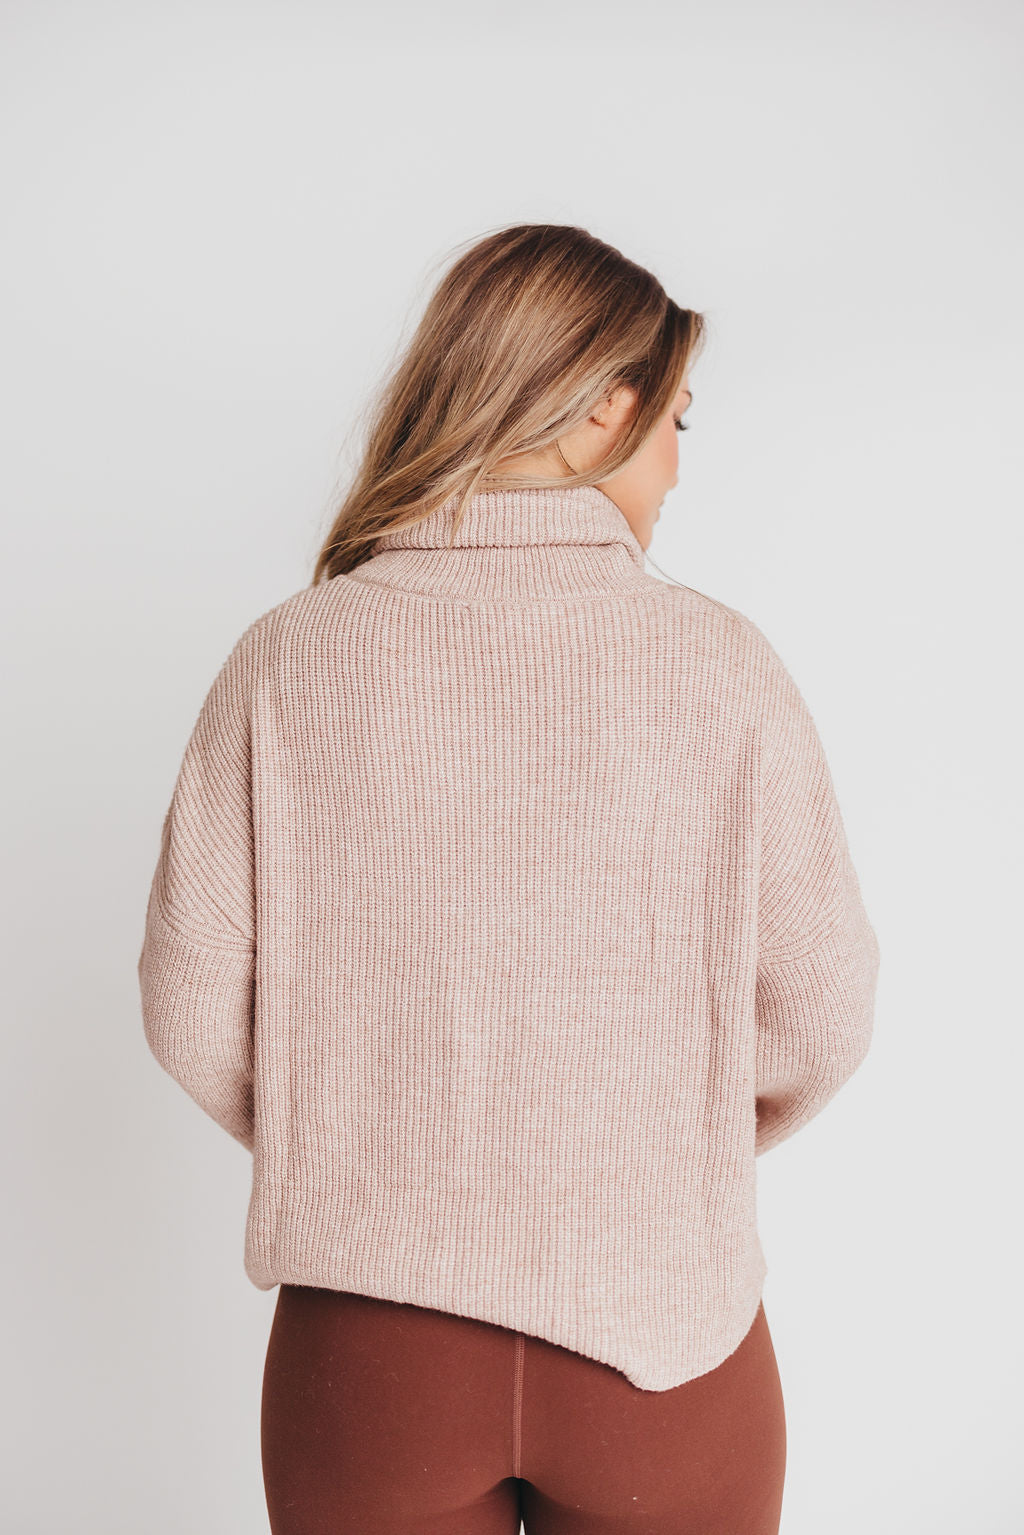 Calla Bell-Sleeve Turtleneck Sweater in Mocha